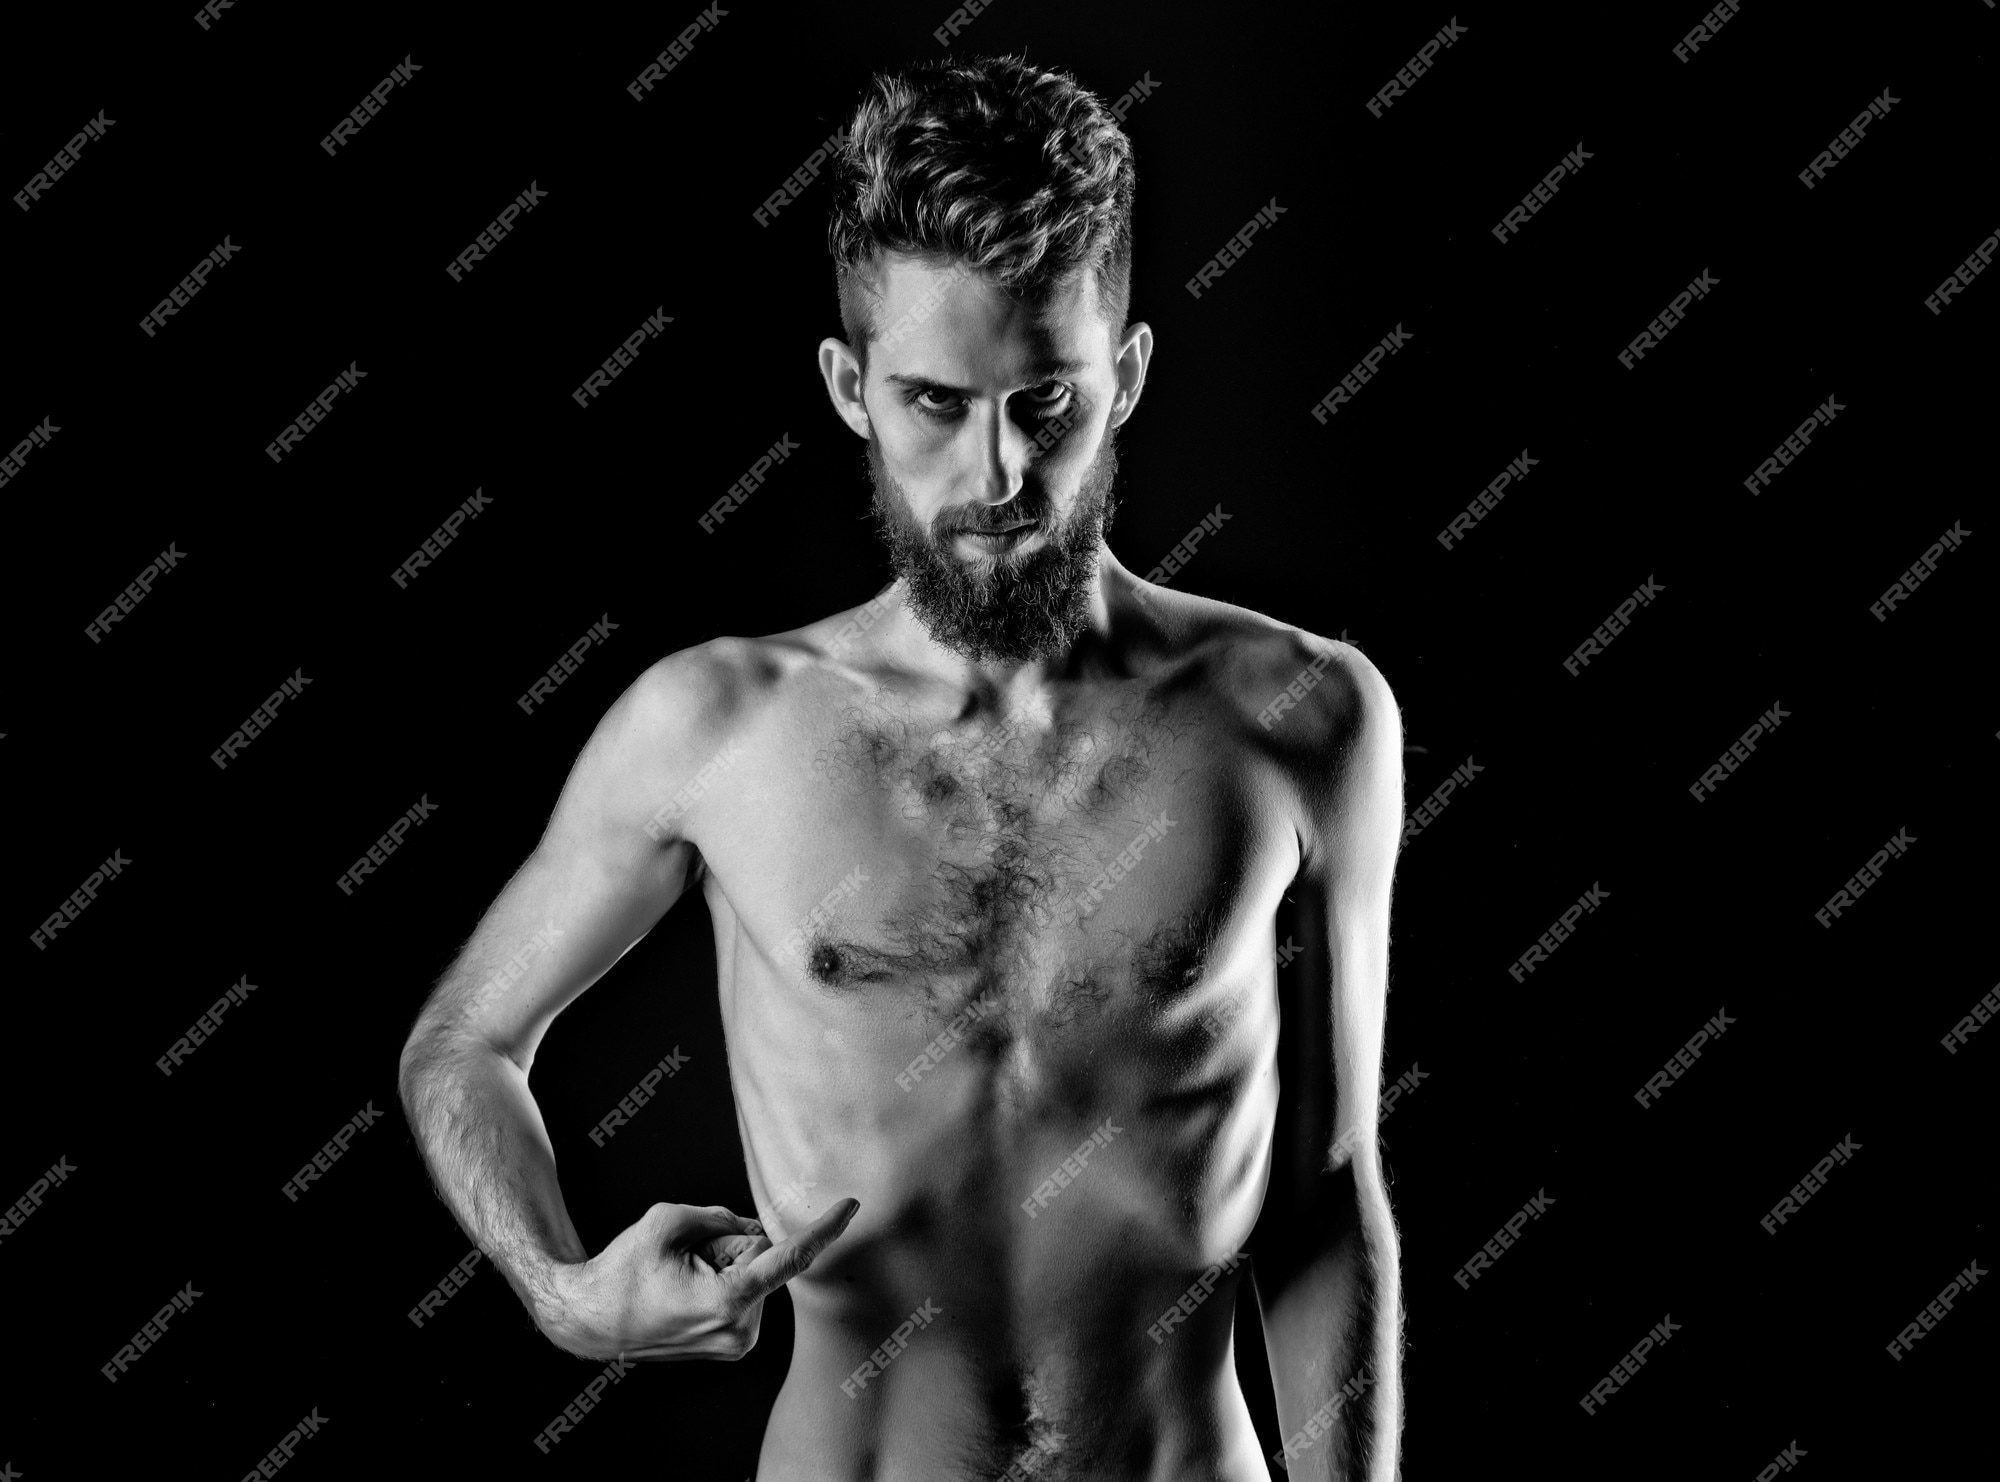 abby schultz share skinny nude man photos